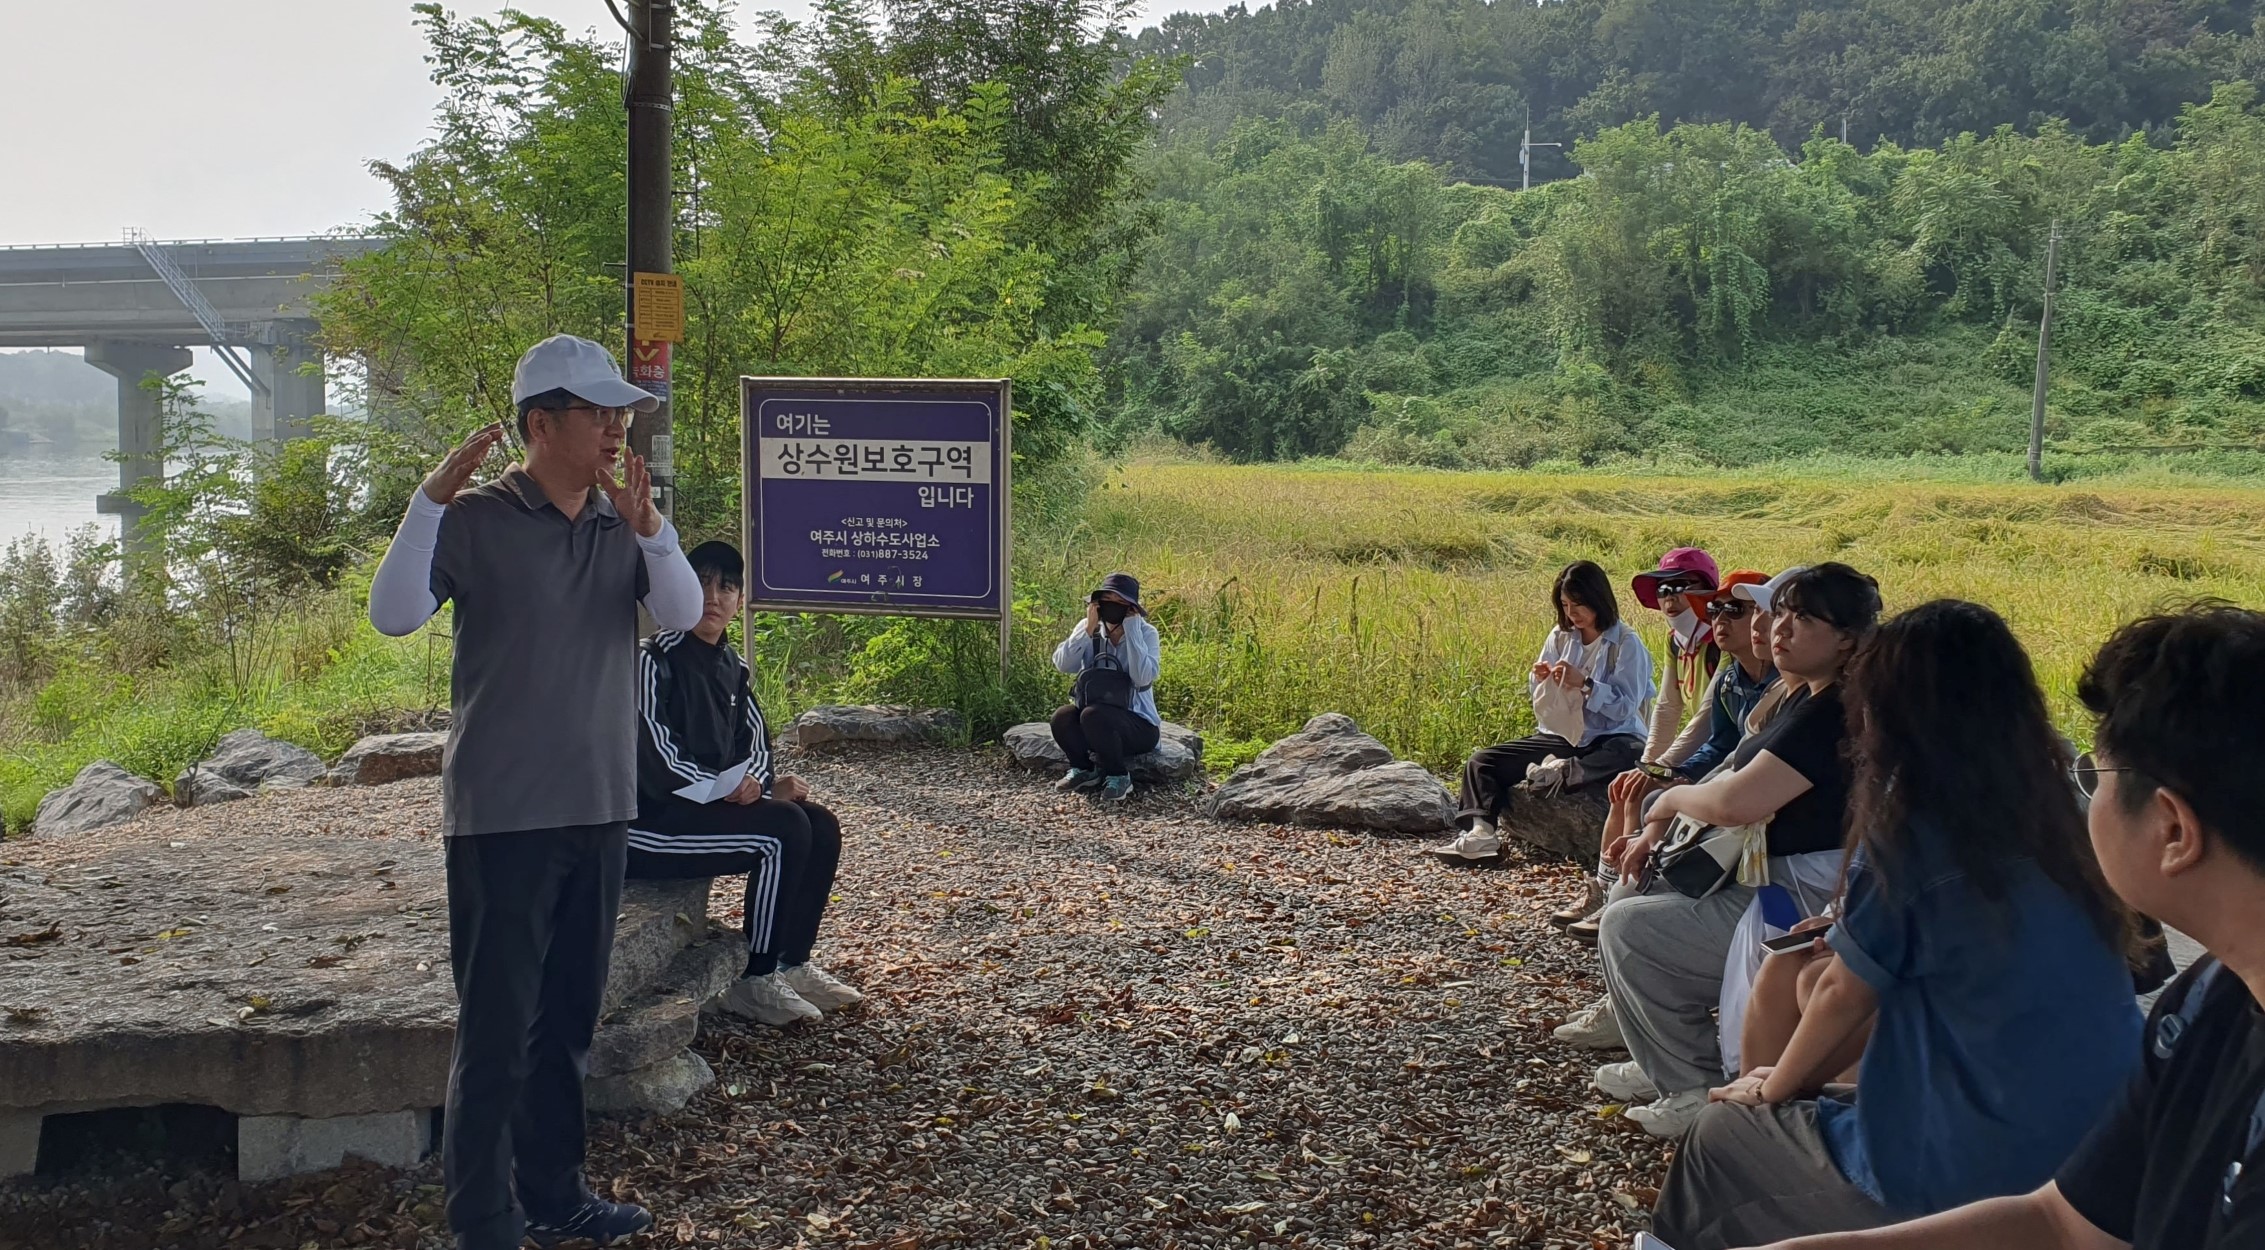 김승희 한강유역환경청장(왼쪽)이 9월 19일, 여주 여강길에서 청년들과 함께 이야기하고 있다